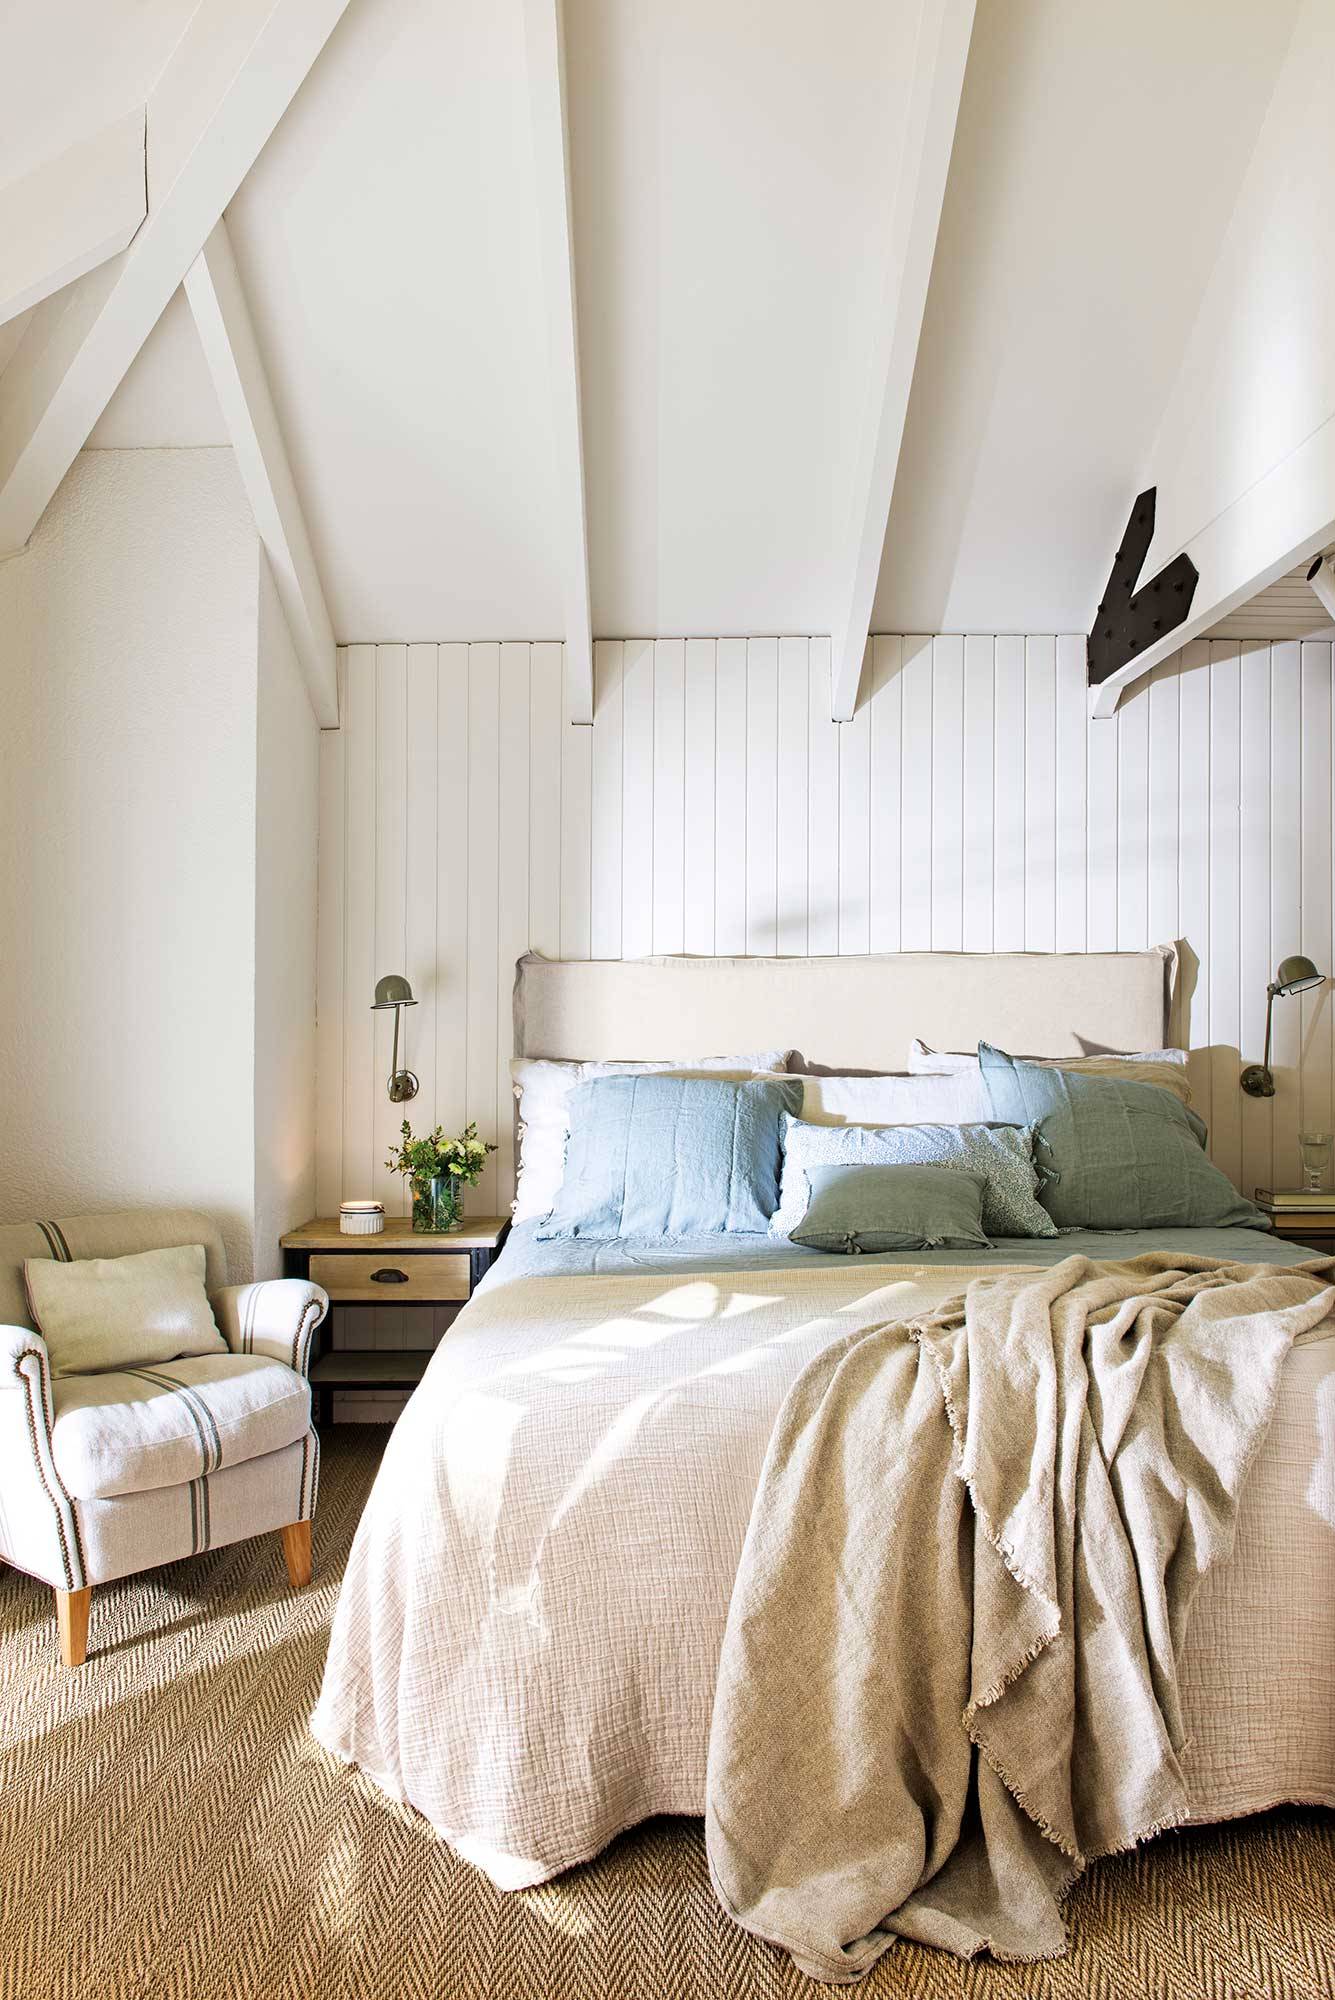 Dormitorio rústico con techo abuhardillado y lamas de madera en color blanco 00507346